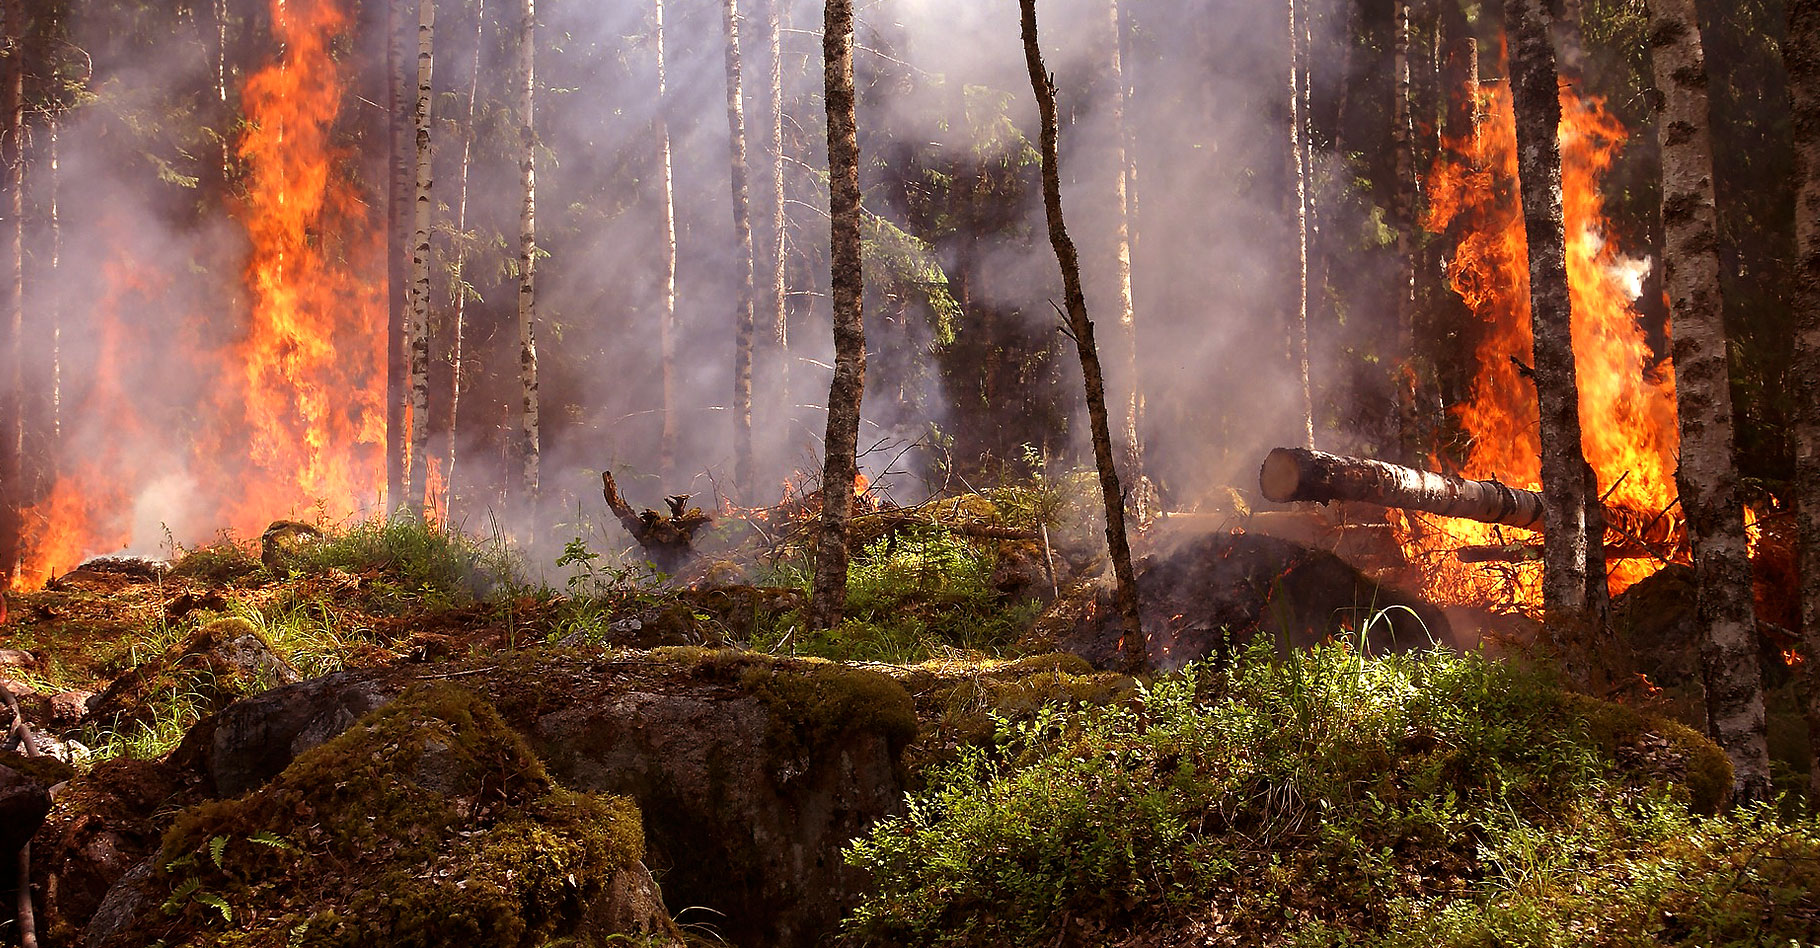 Les risques de feux de forêts. © Ylvers, Domaine public